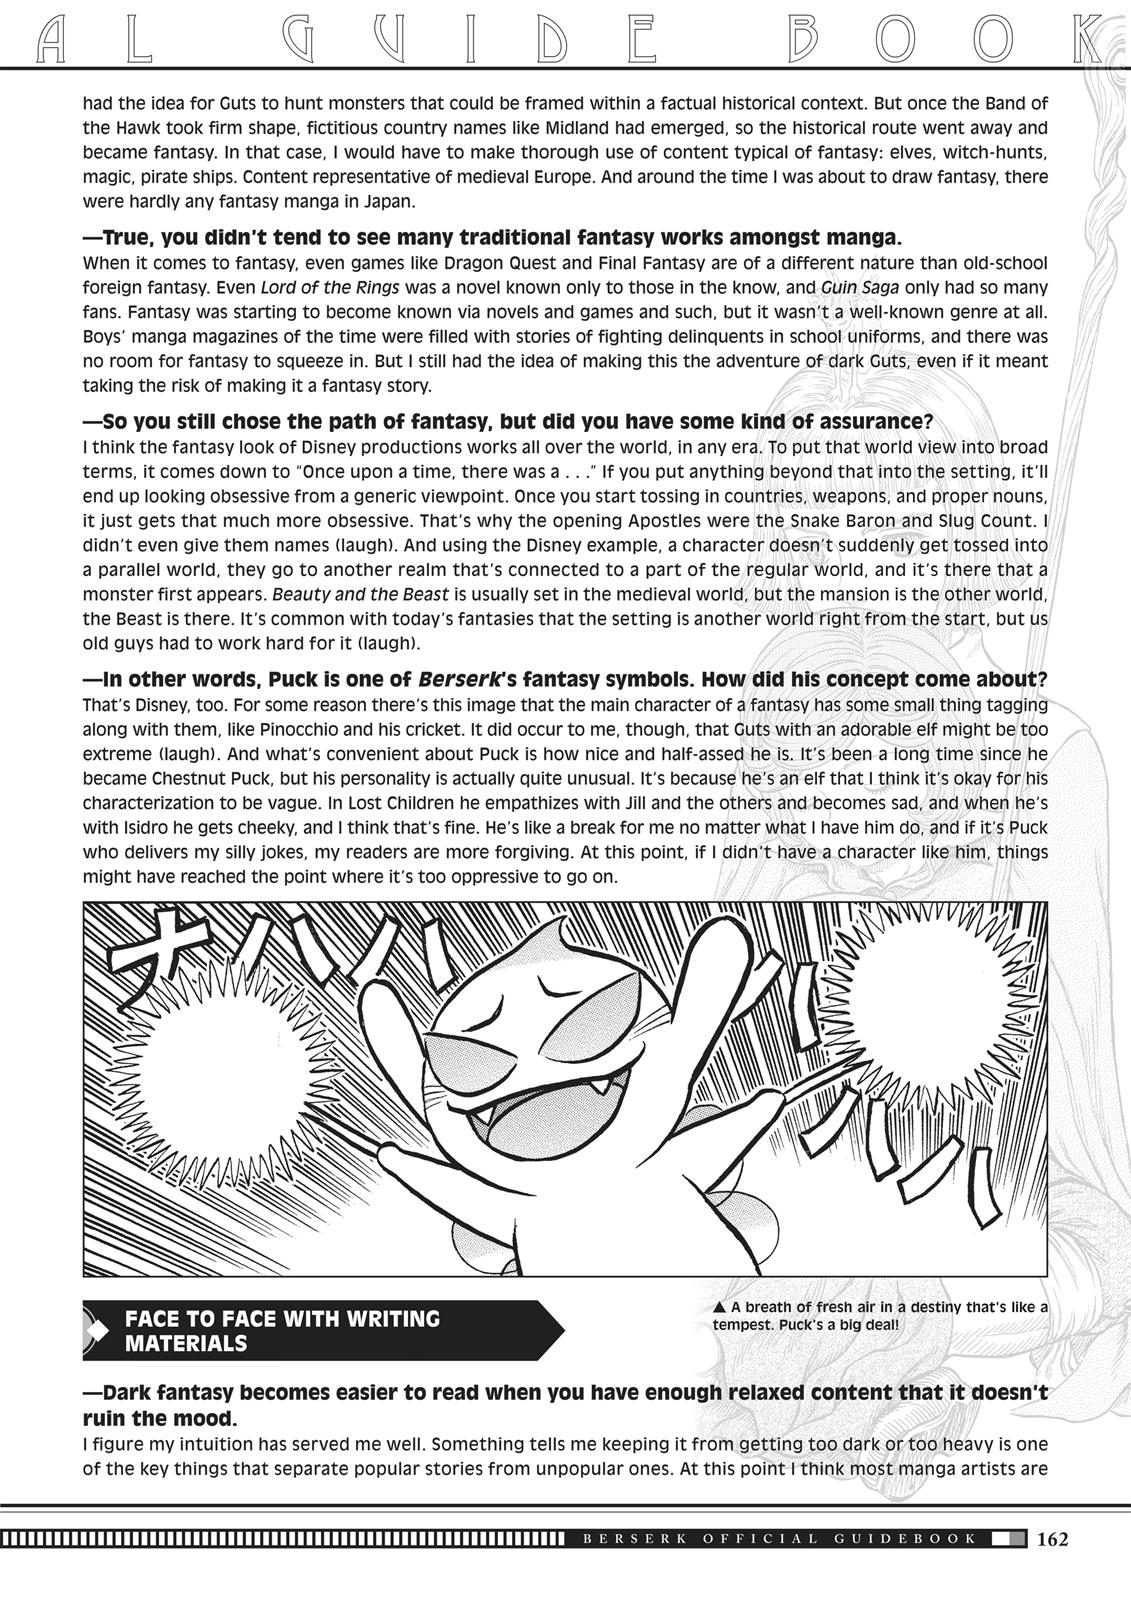 Berserk Manga Chapter 350.5 image 159